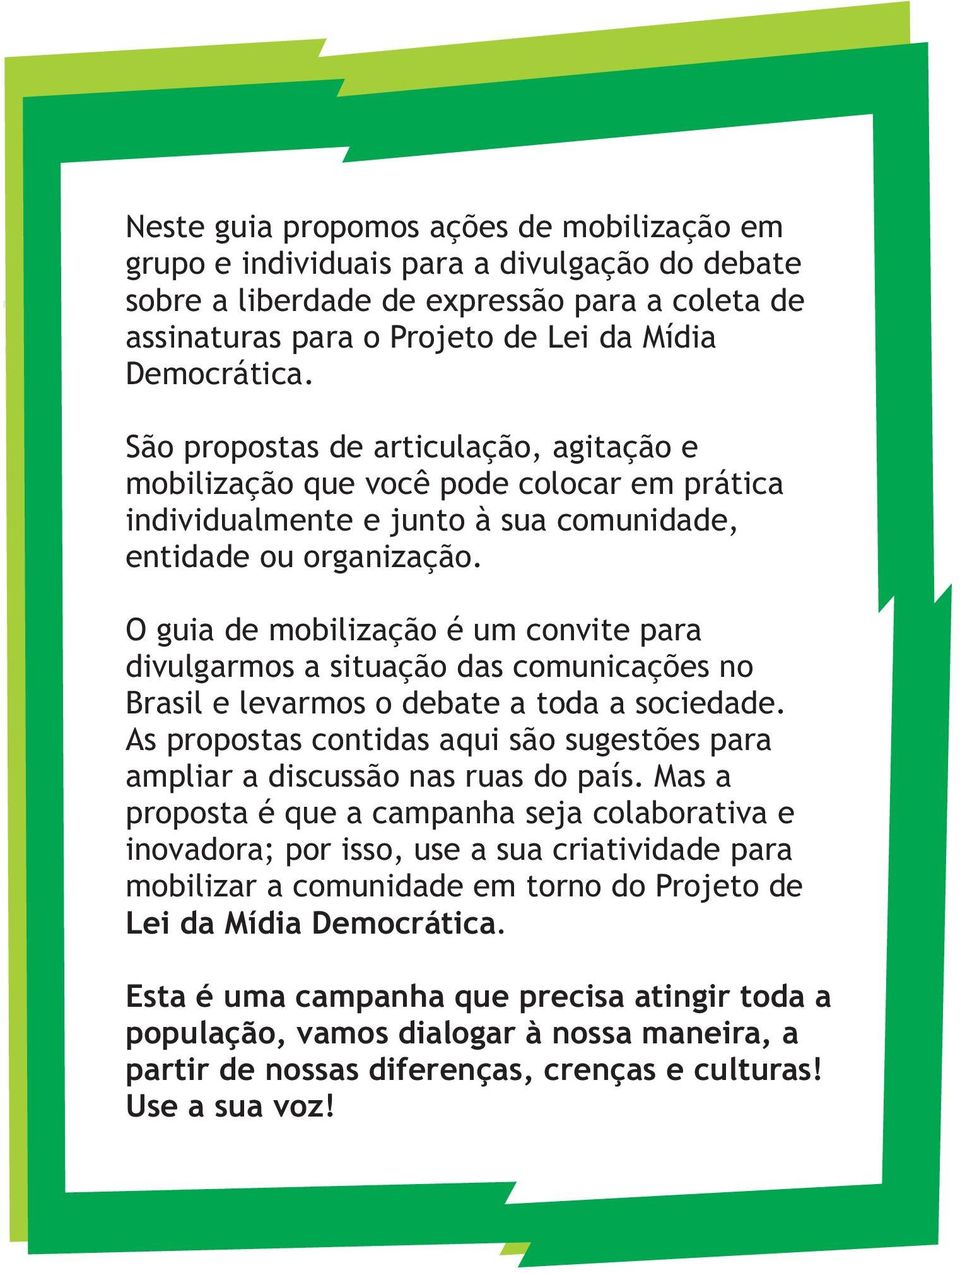 O guia de mobilização é um convite para divulgarmos a situação das comunicações no Brasil e levarmos o debate a toda a sociedade.